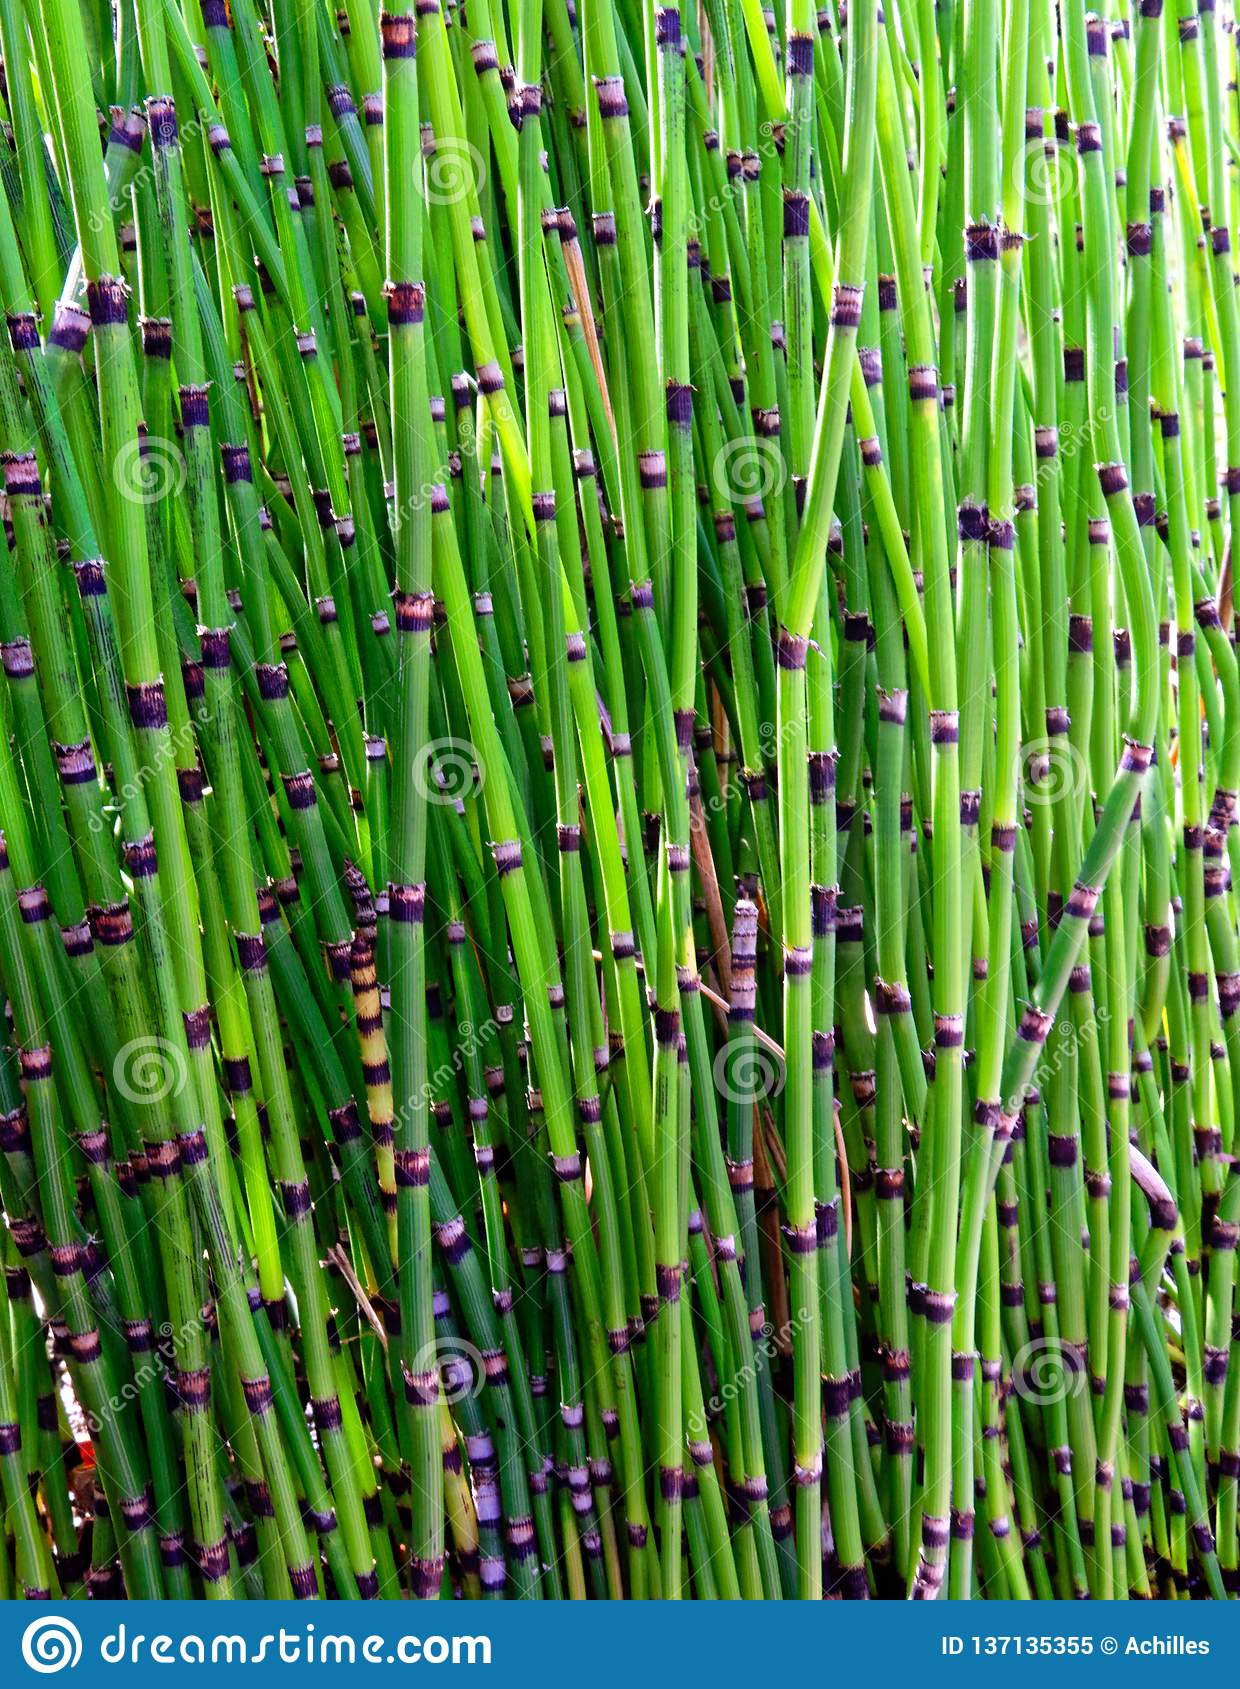 Horsetail Equisetum Plant, Bali, Indonesia Stock Image – Image Of